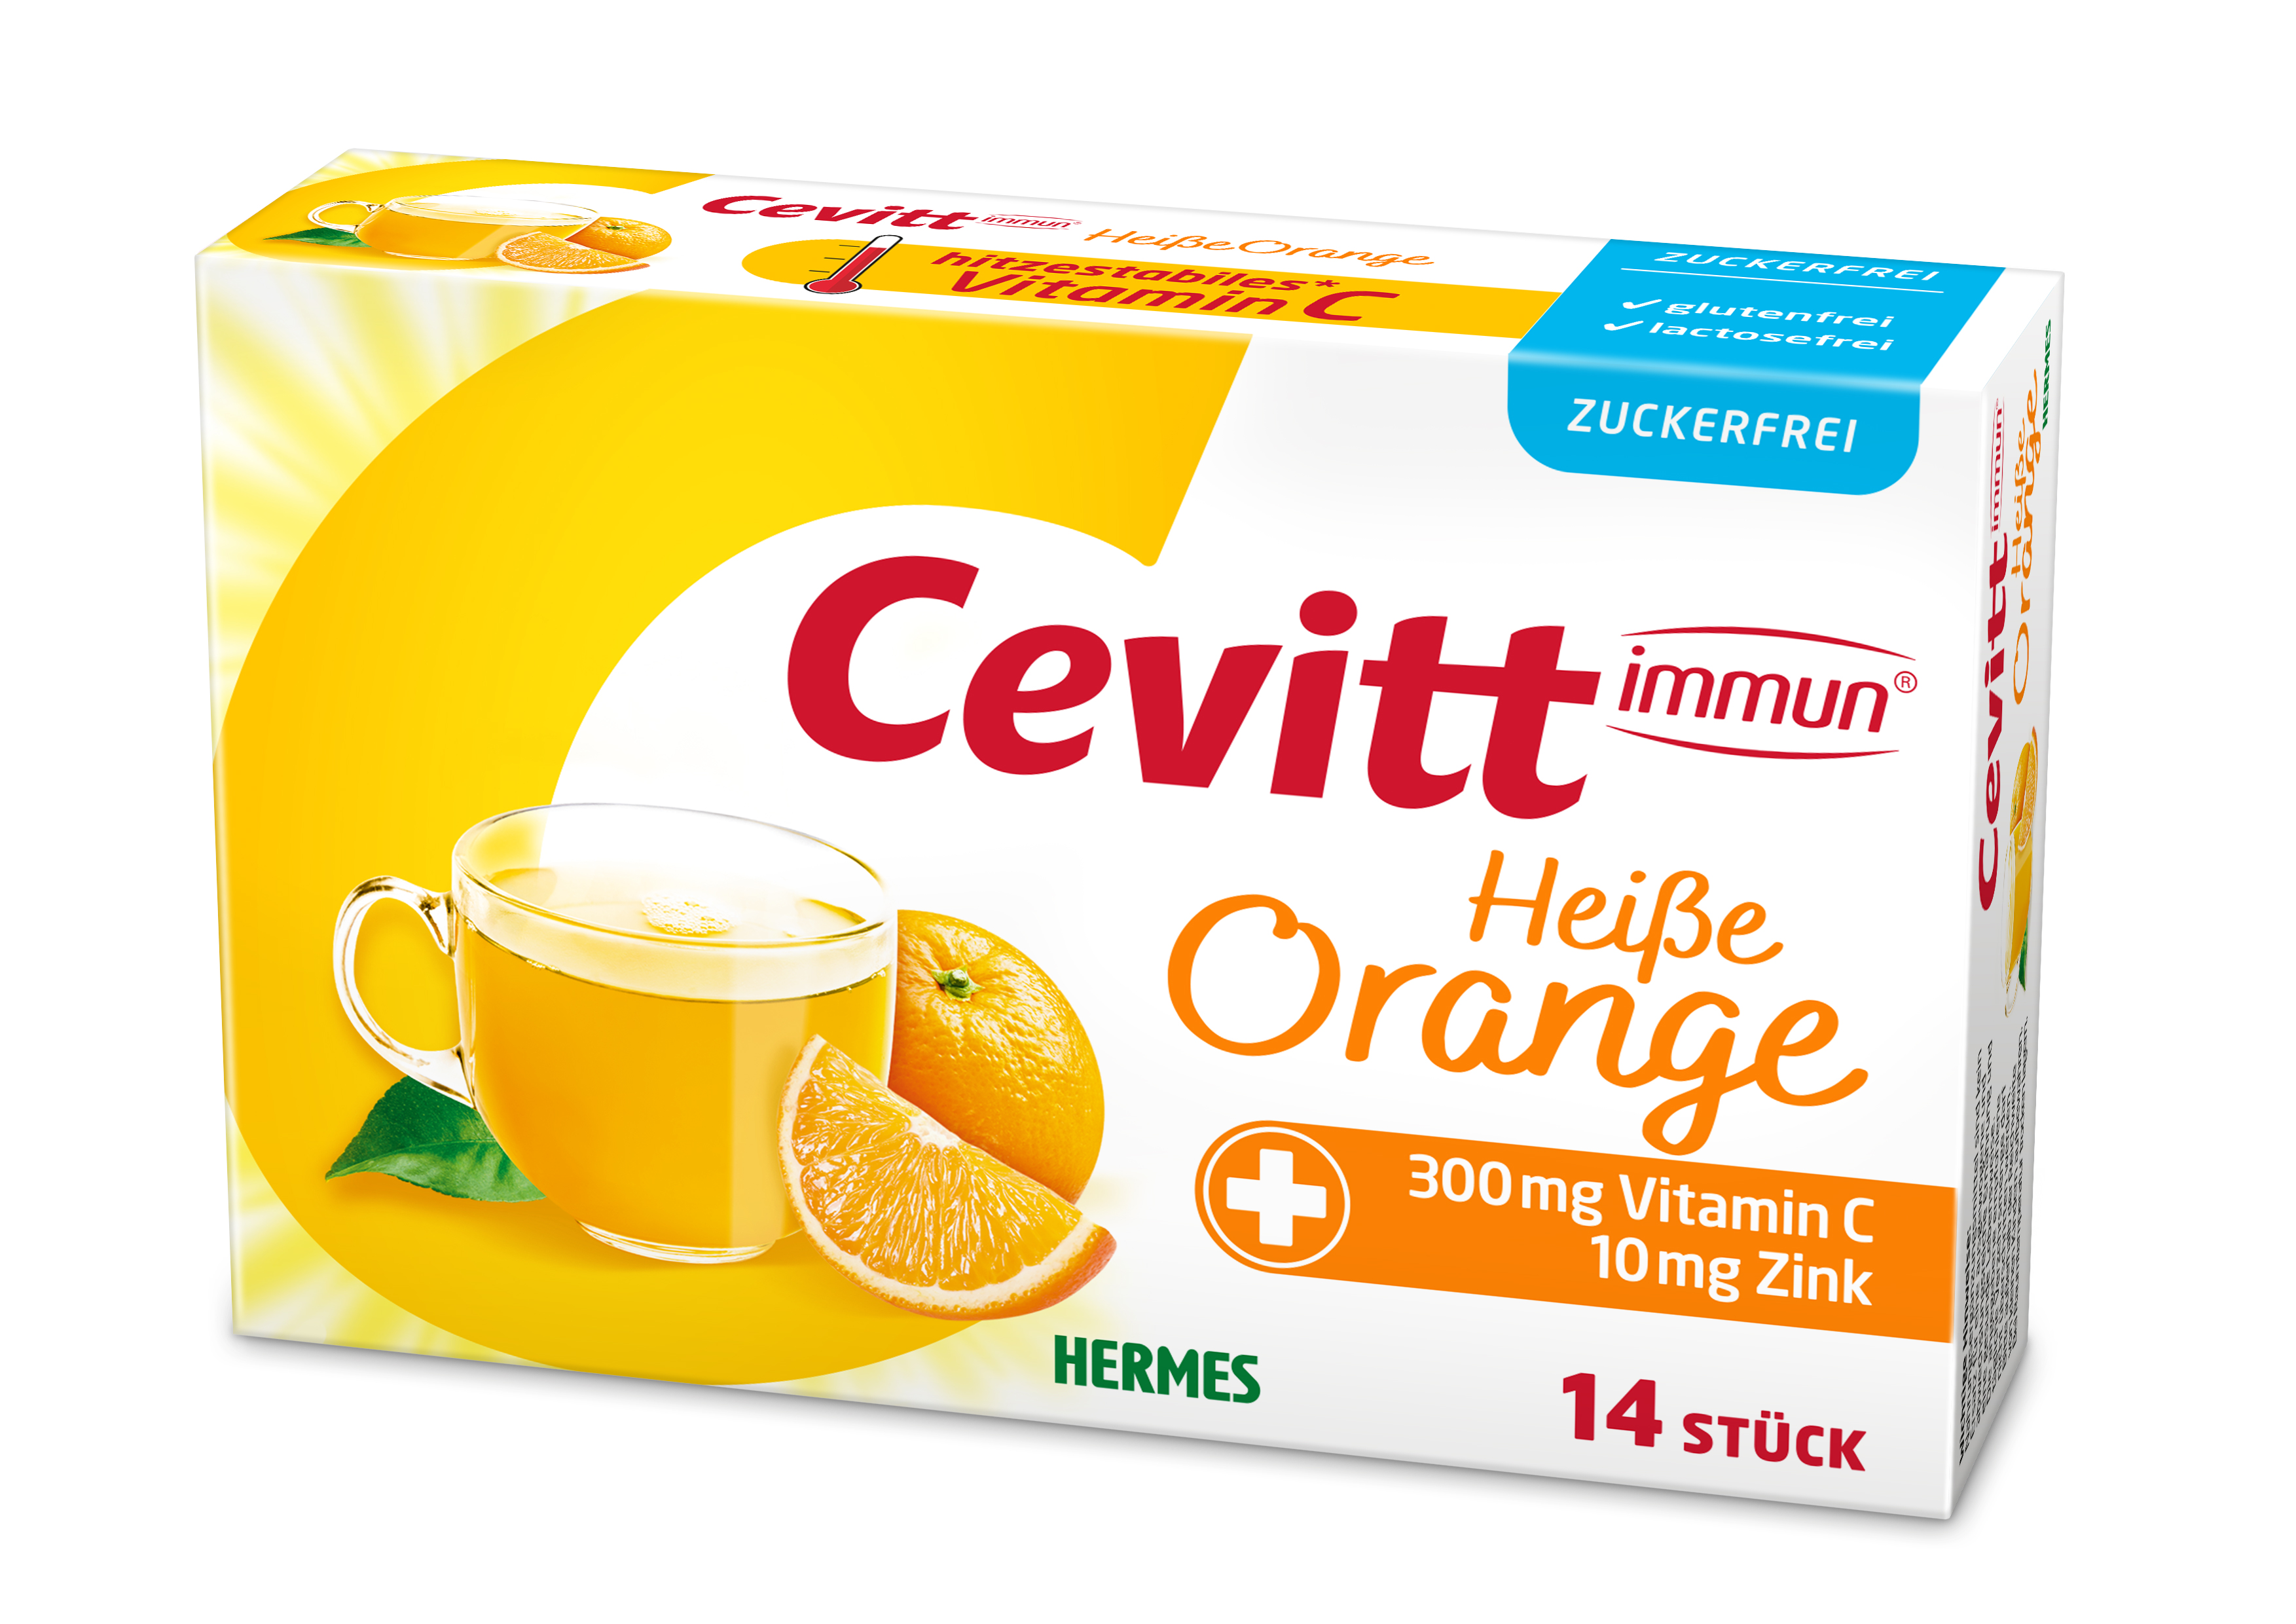 Cevitt immun® Heiße Orange Zuckerfrei 14 ST